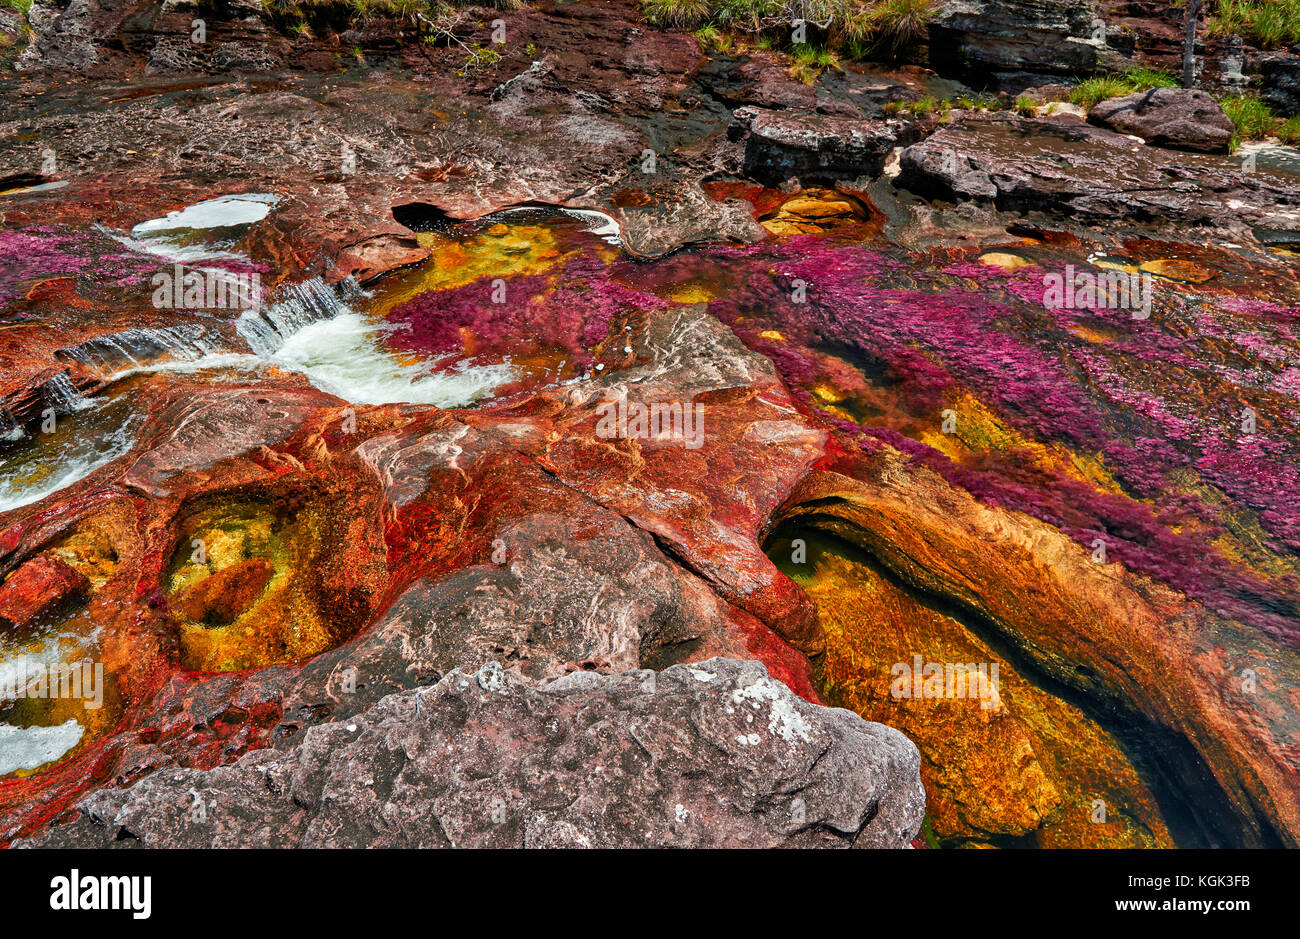 Alghe rosse di cano cristales chiamato 'Fiume di cinque colori' o il 'liquid rainbow", Serrania de la Macarena, la macarena, Colombia, Sud America Foto Stock